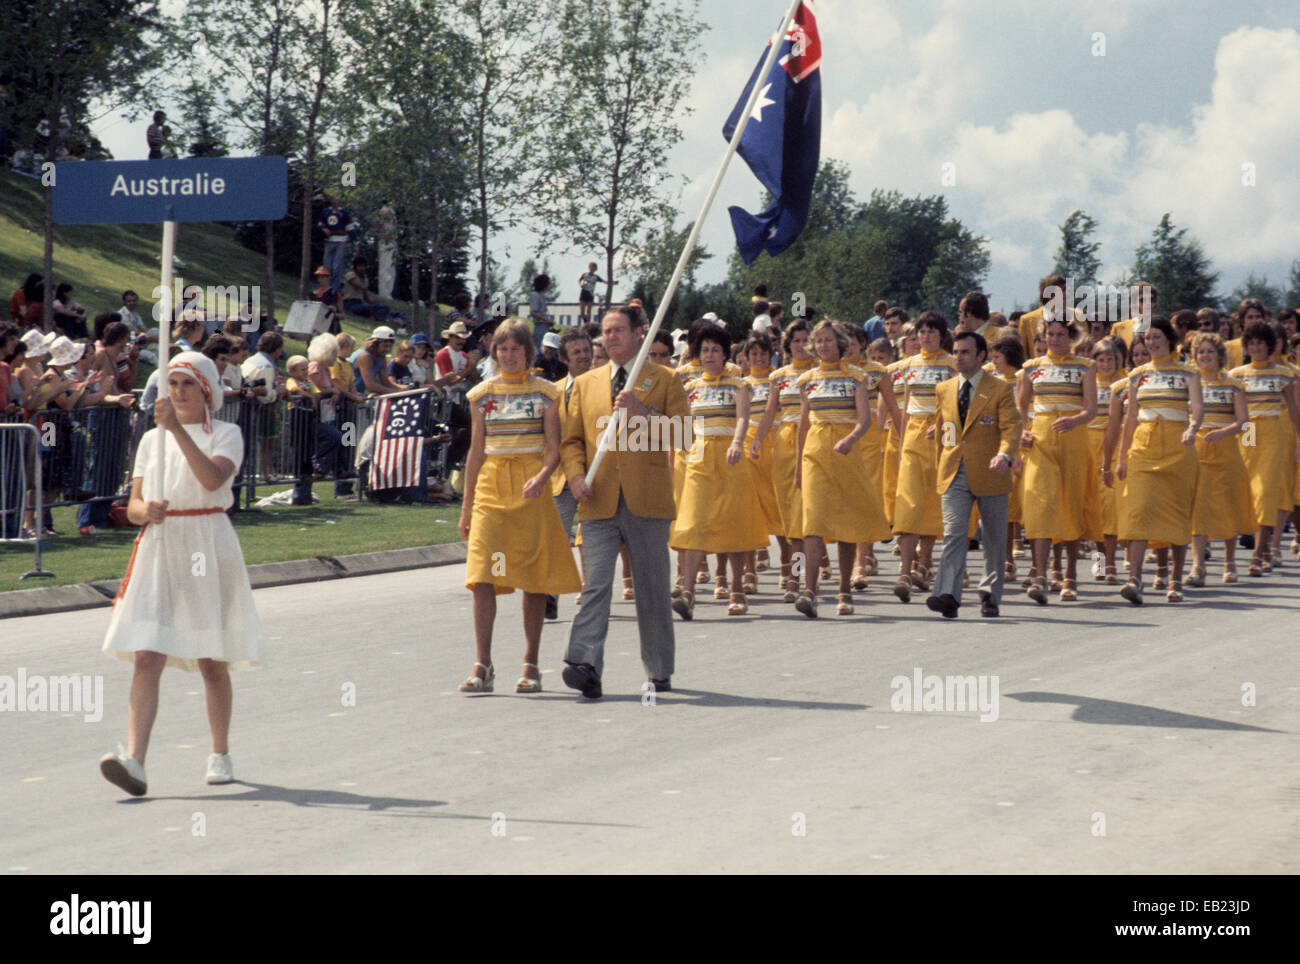 Juegos Olímpicos de 1976 en Montreal, Canadá, el desfile de los atletas en las ceremonias de apertura, el equipo australiano Foto de stock